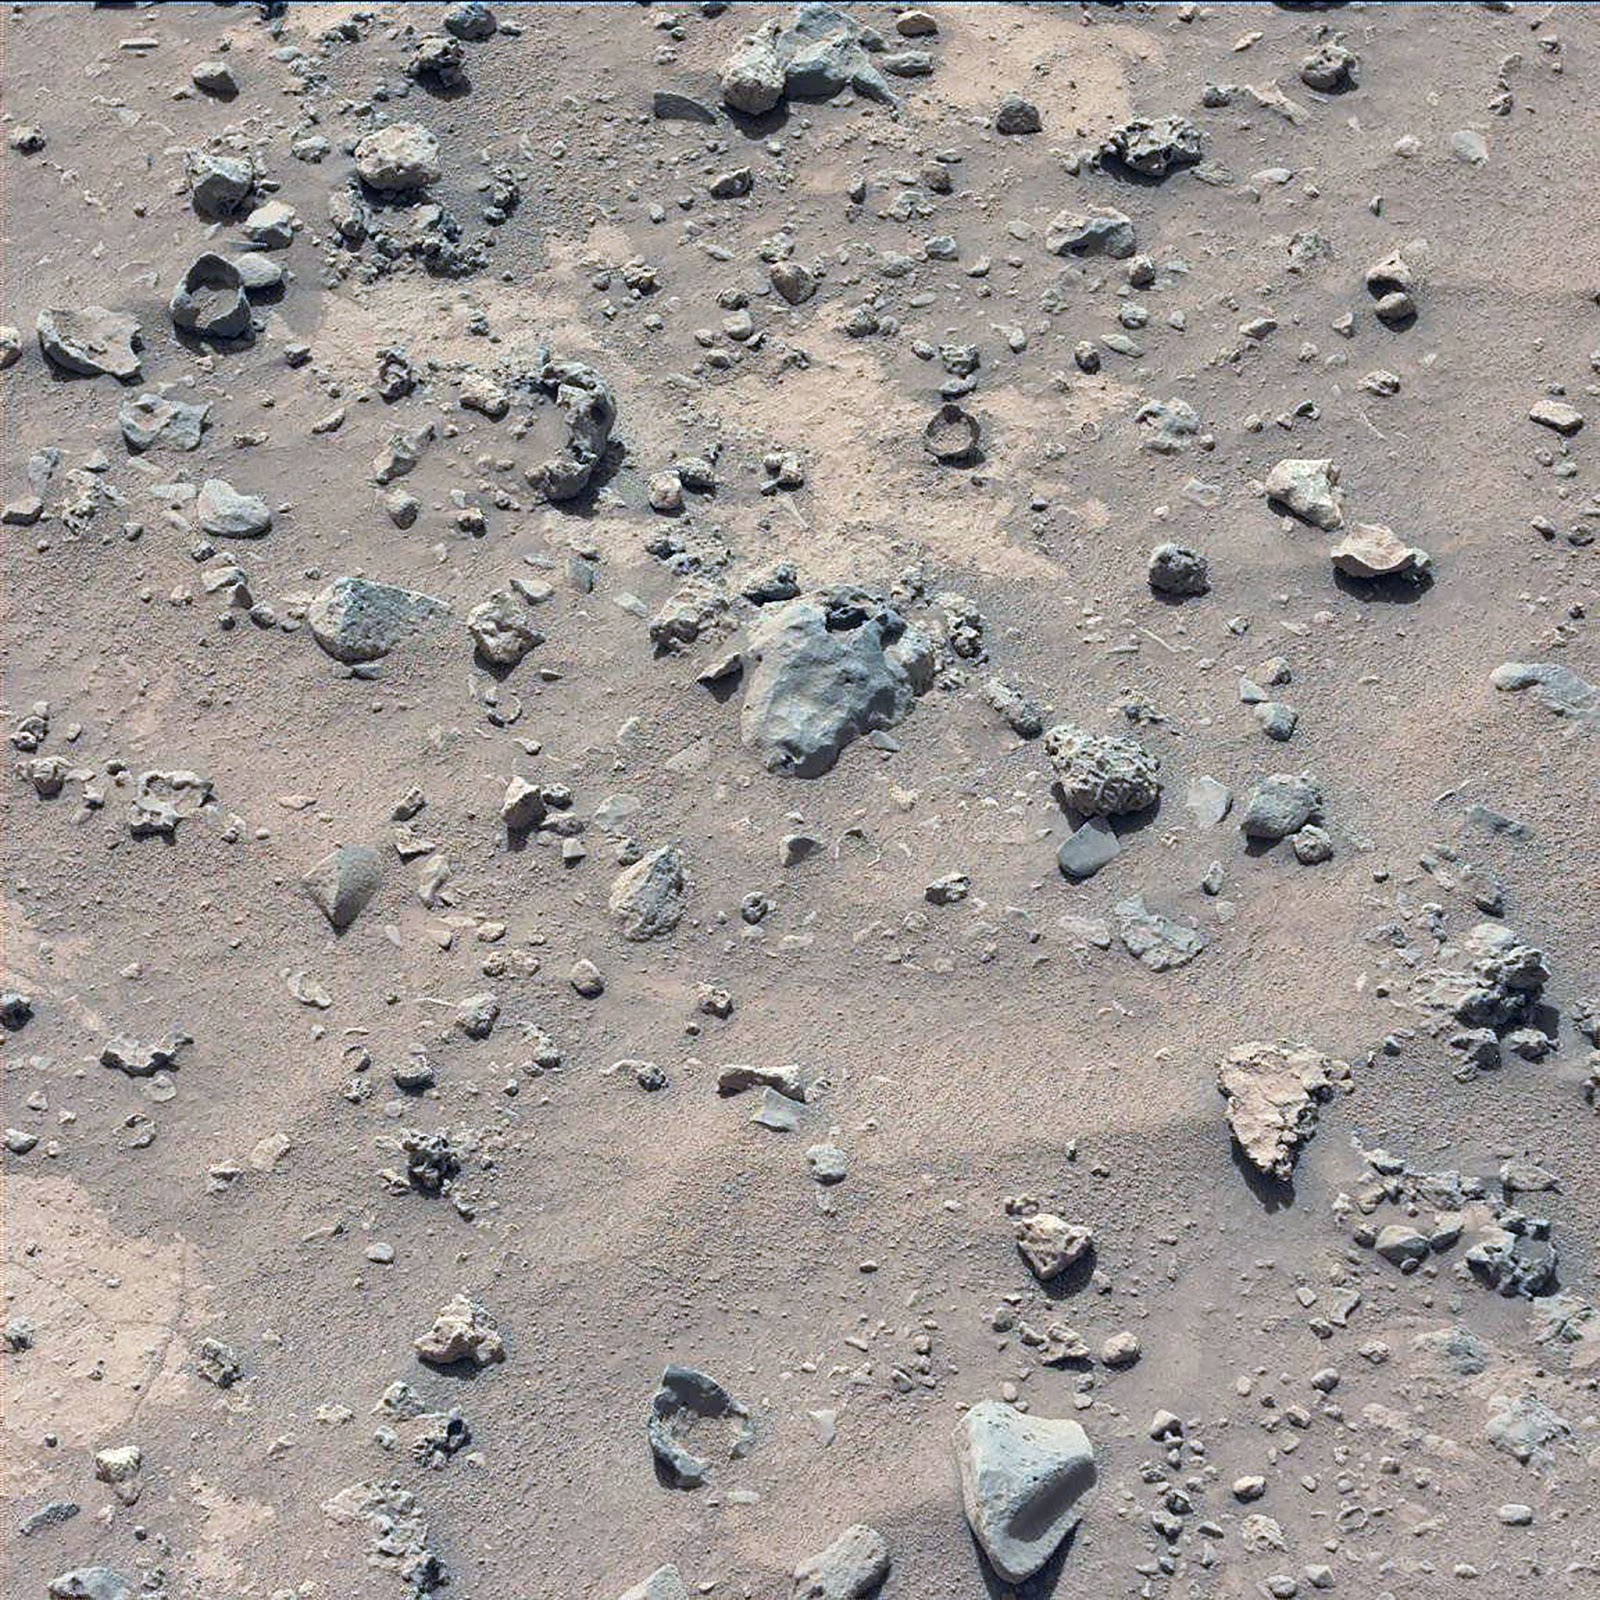 mars - [Topic unique] Le robot Curiosity sur Mars  - Page 75 0689ML0029050010304060E01_DXXX+a